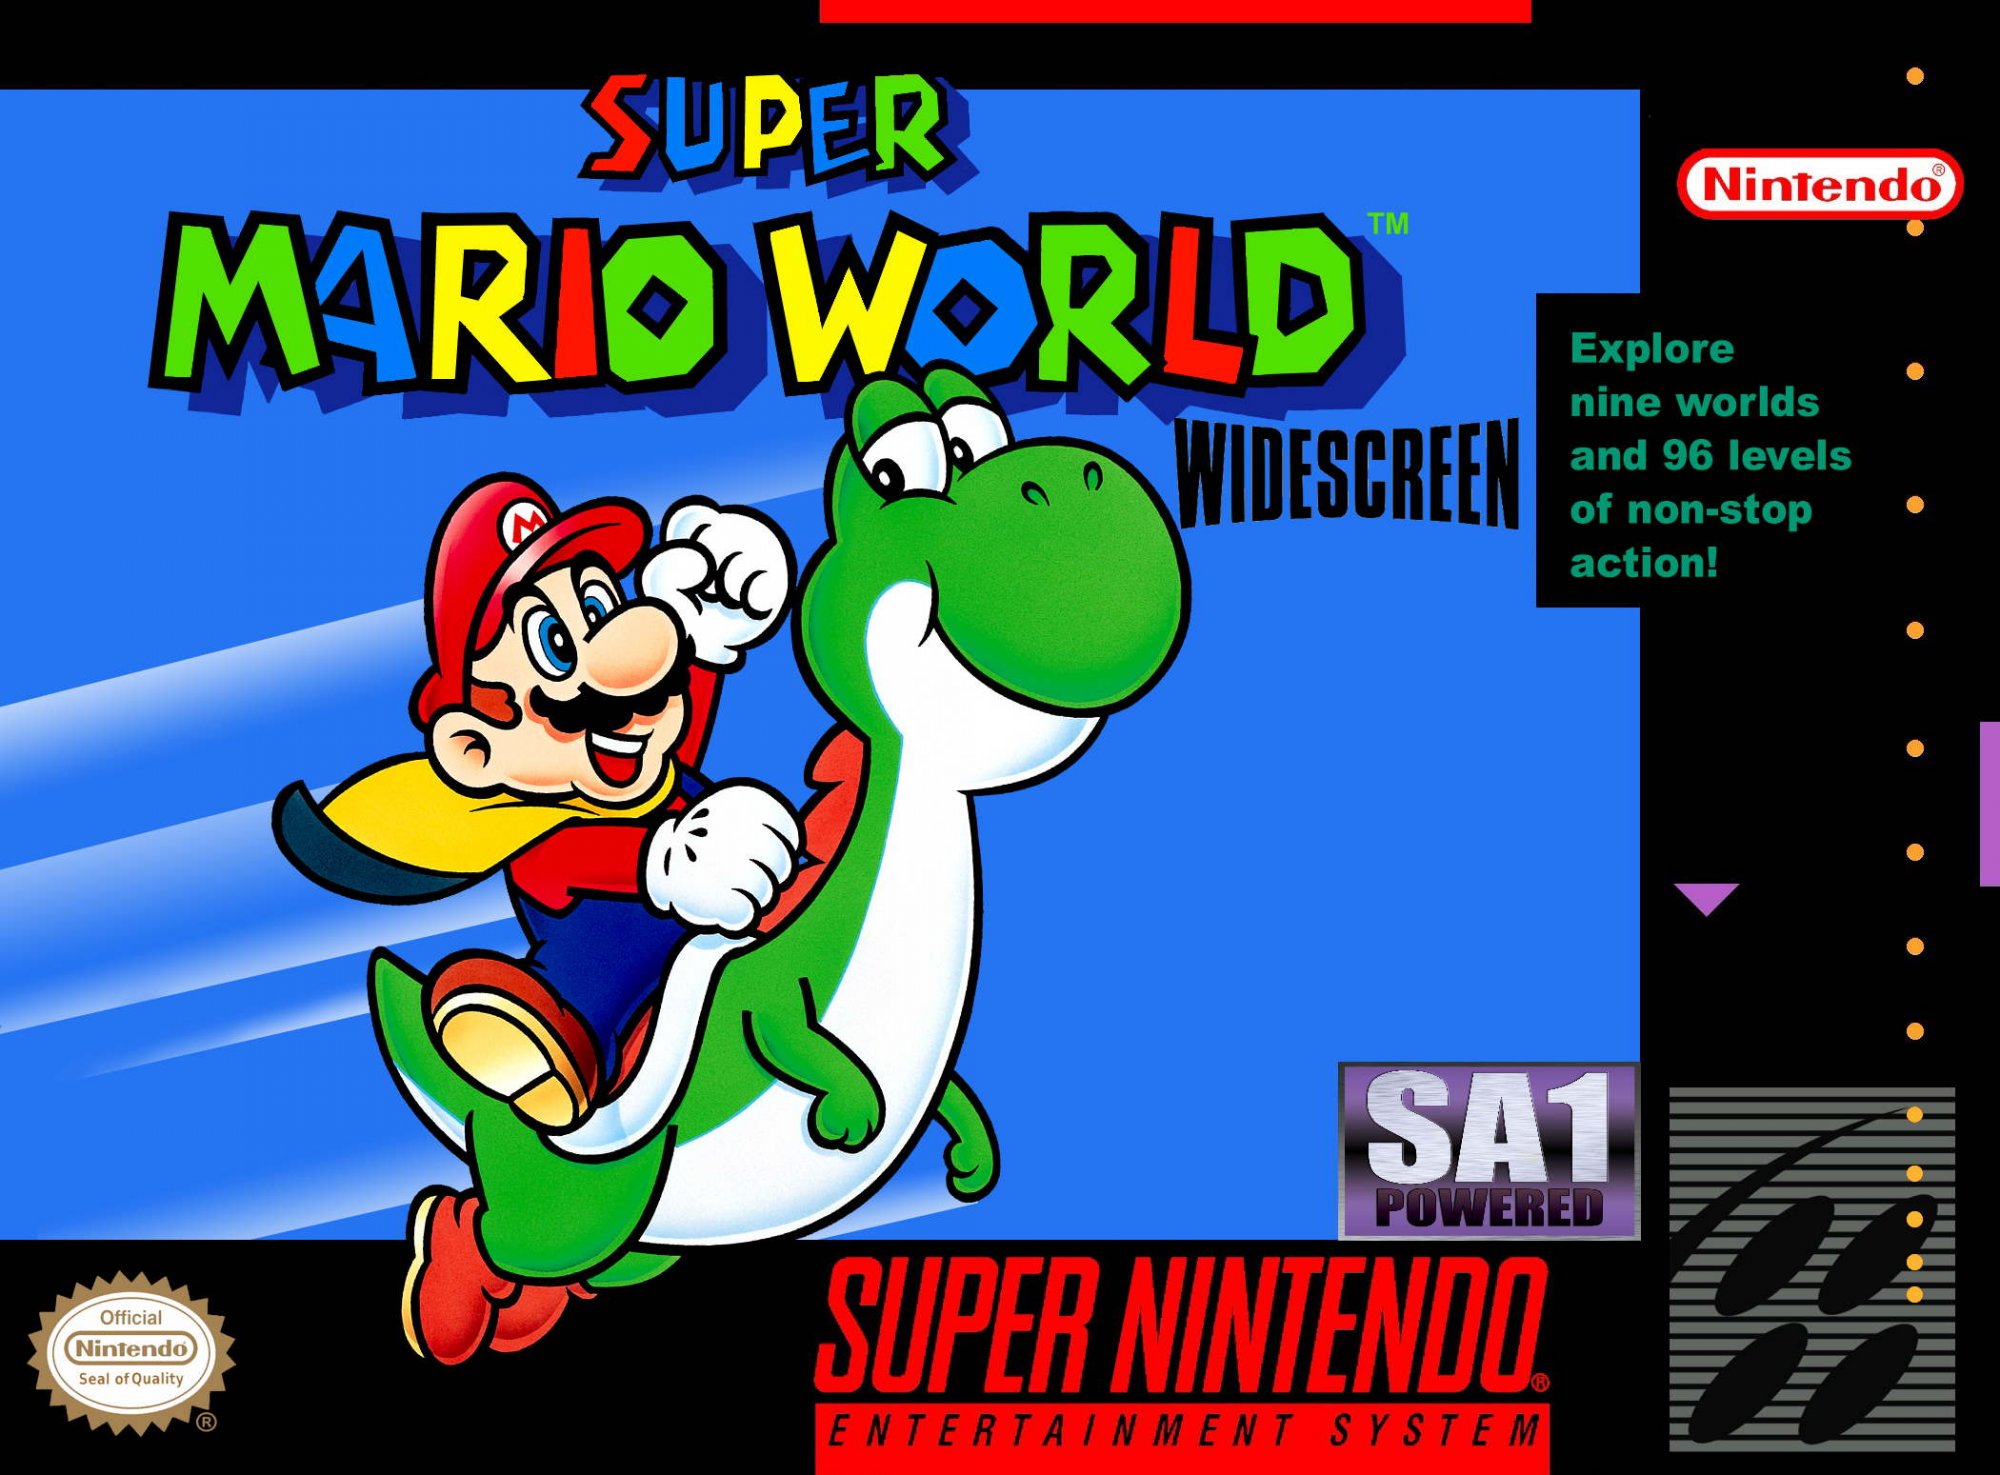 Super Mario World Widescreen